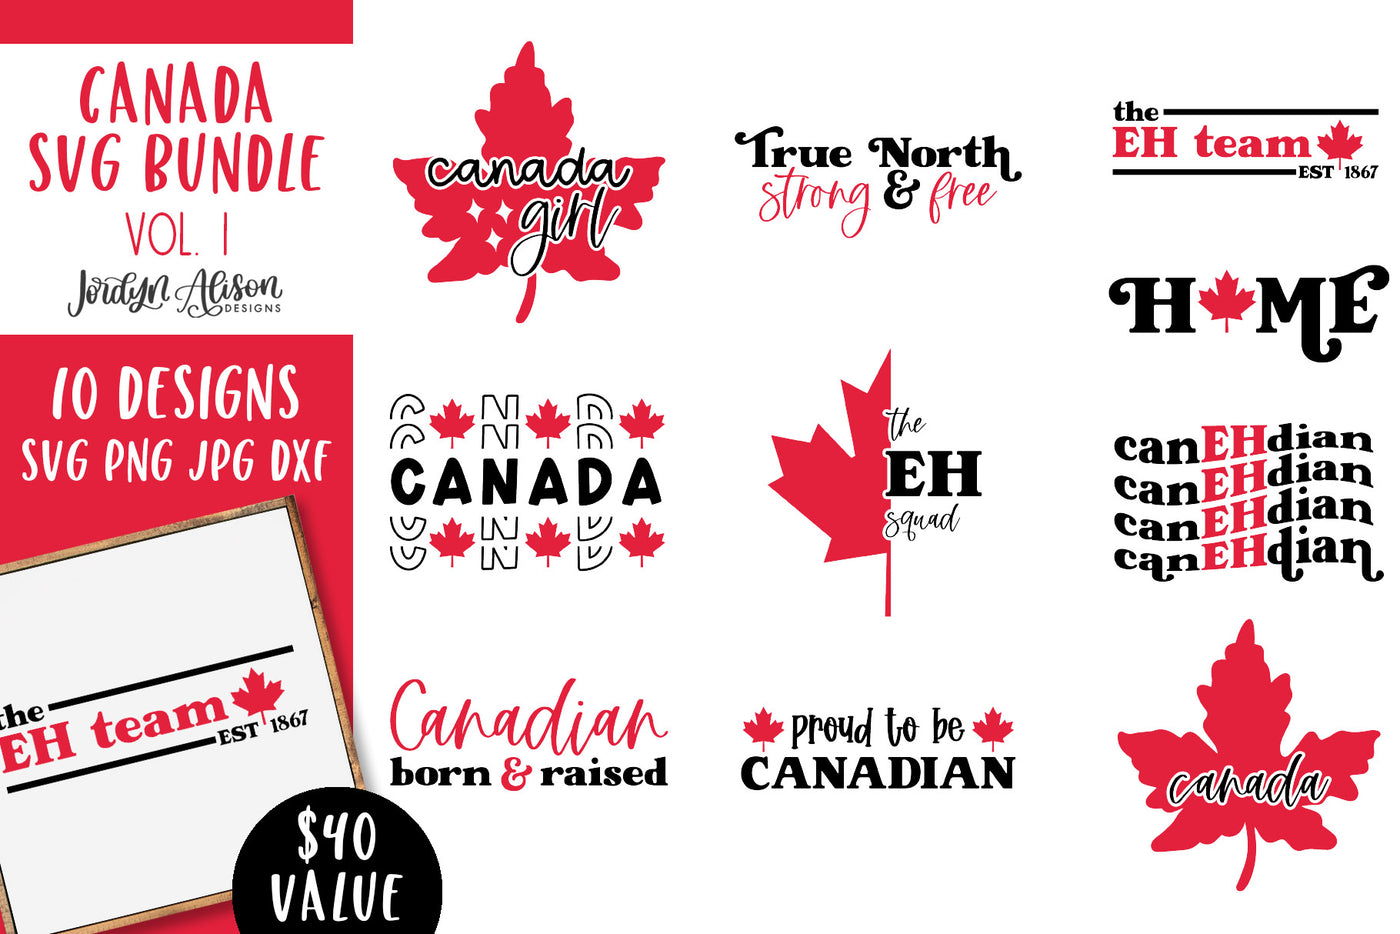 Canada SVG Bundle Vol 1